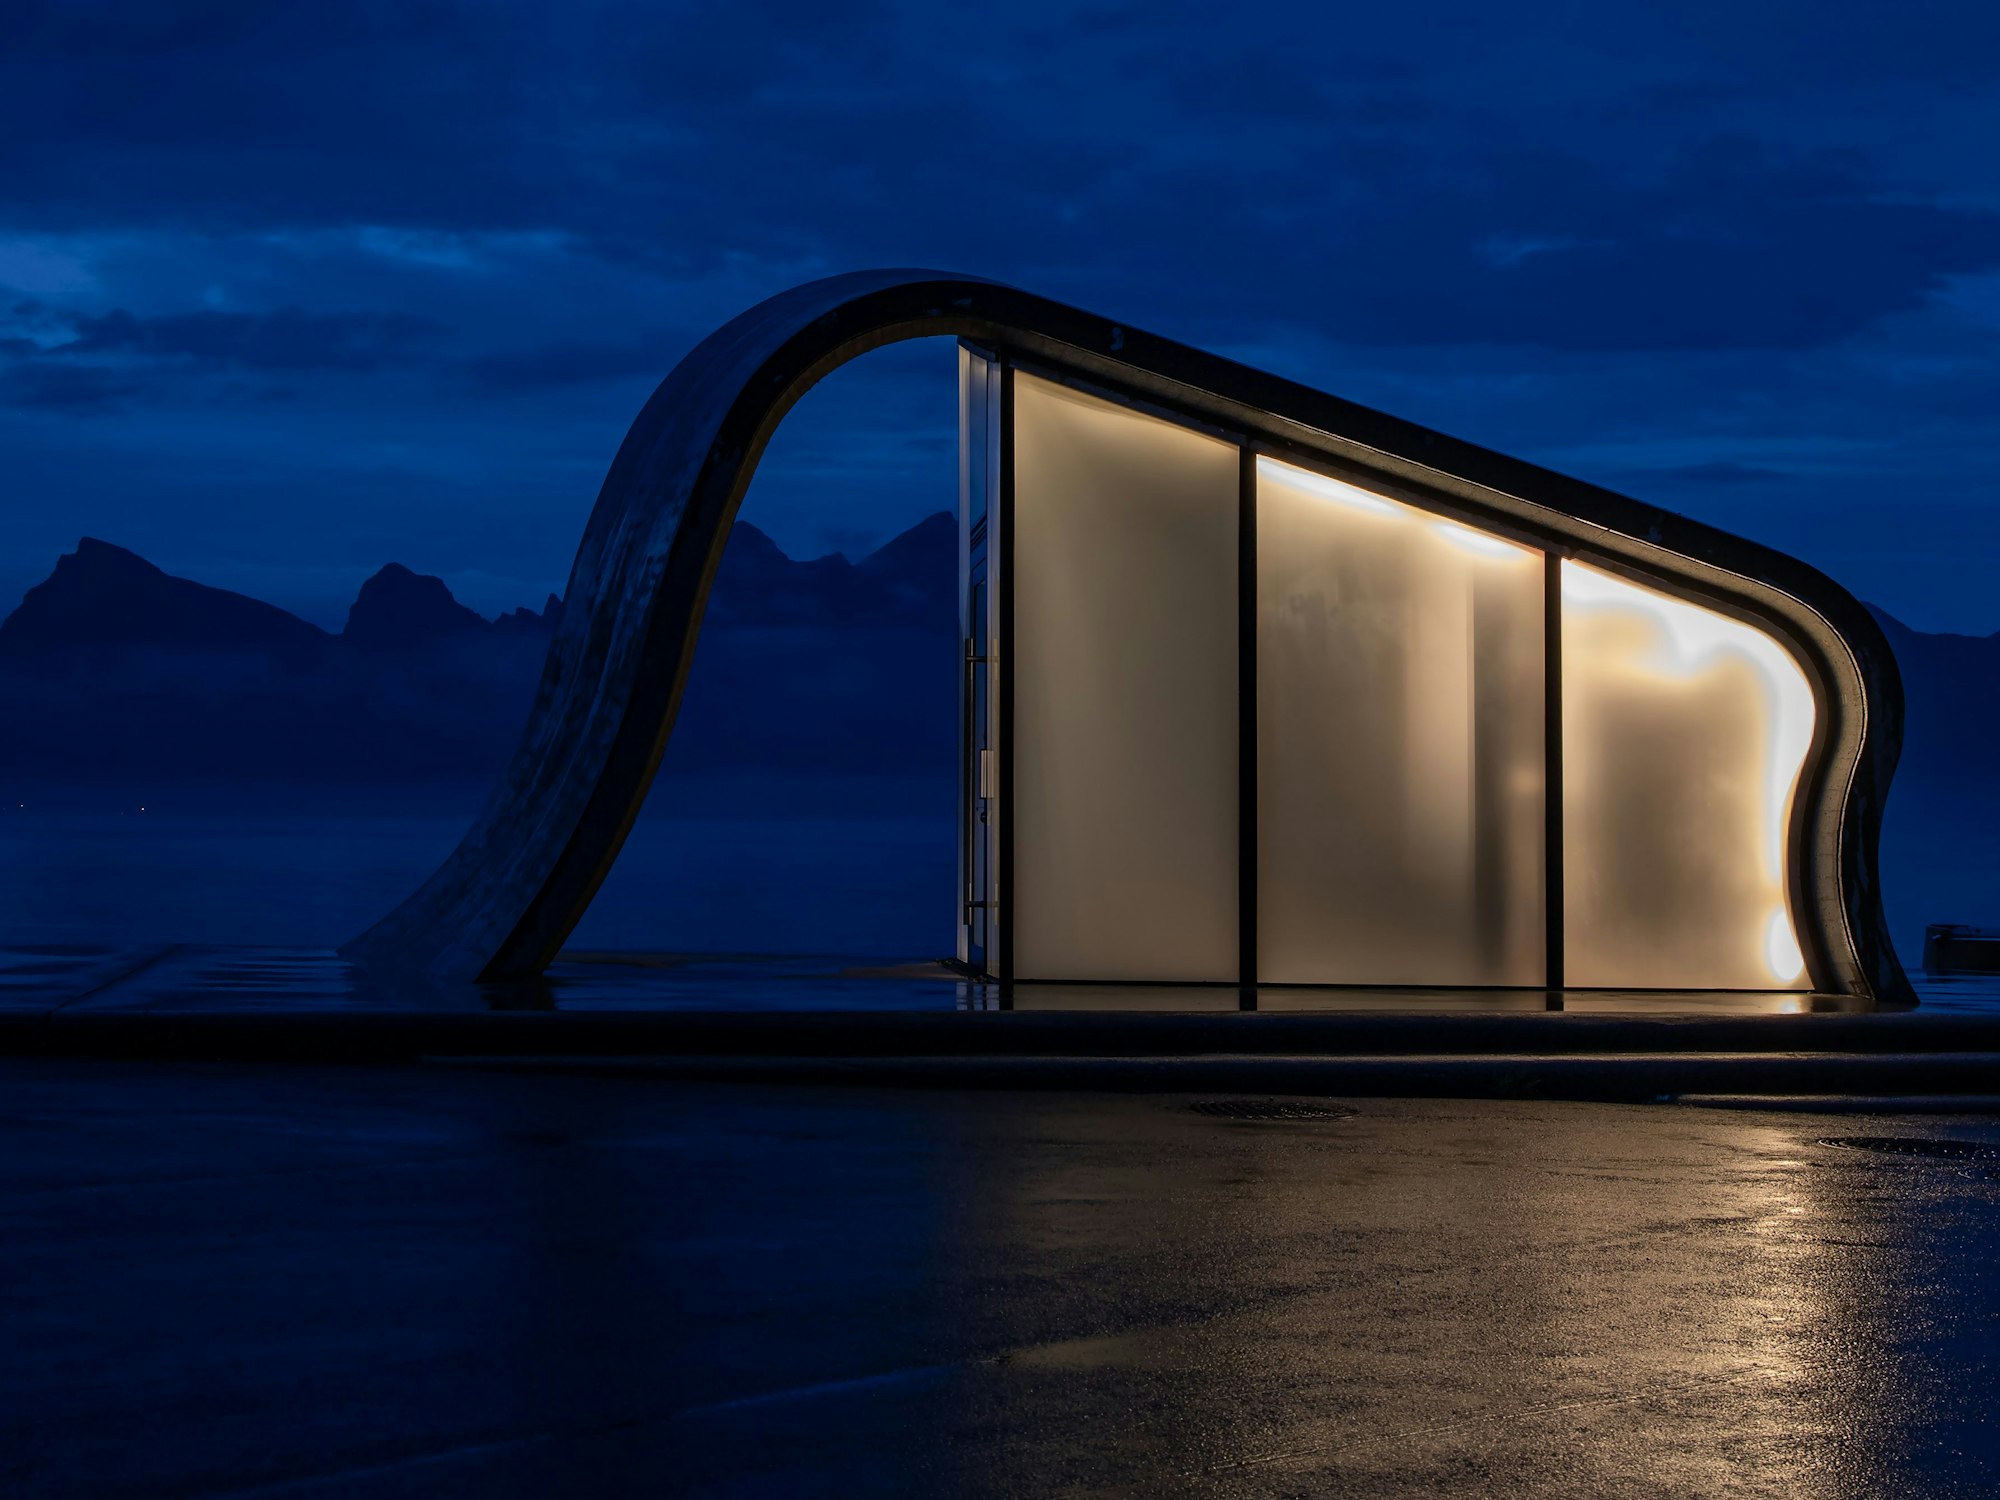 In Norwegen werden die öffentlichen Toiletten architektonisch aufwendig gestaltet. Das Bild zeigt eines in der Form eines Elefanten. Es wurde in der Blauen Stunde auf den Lofoten fotografiert.